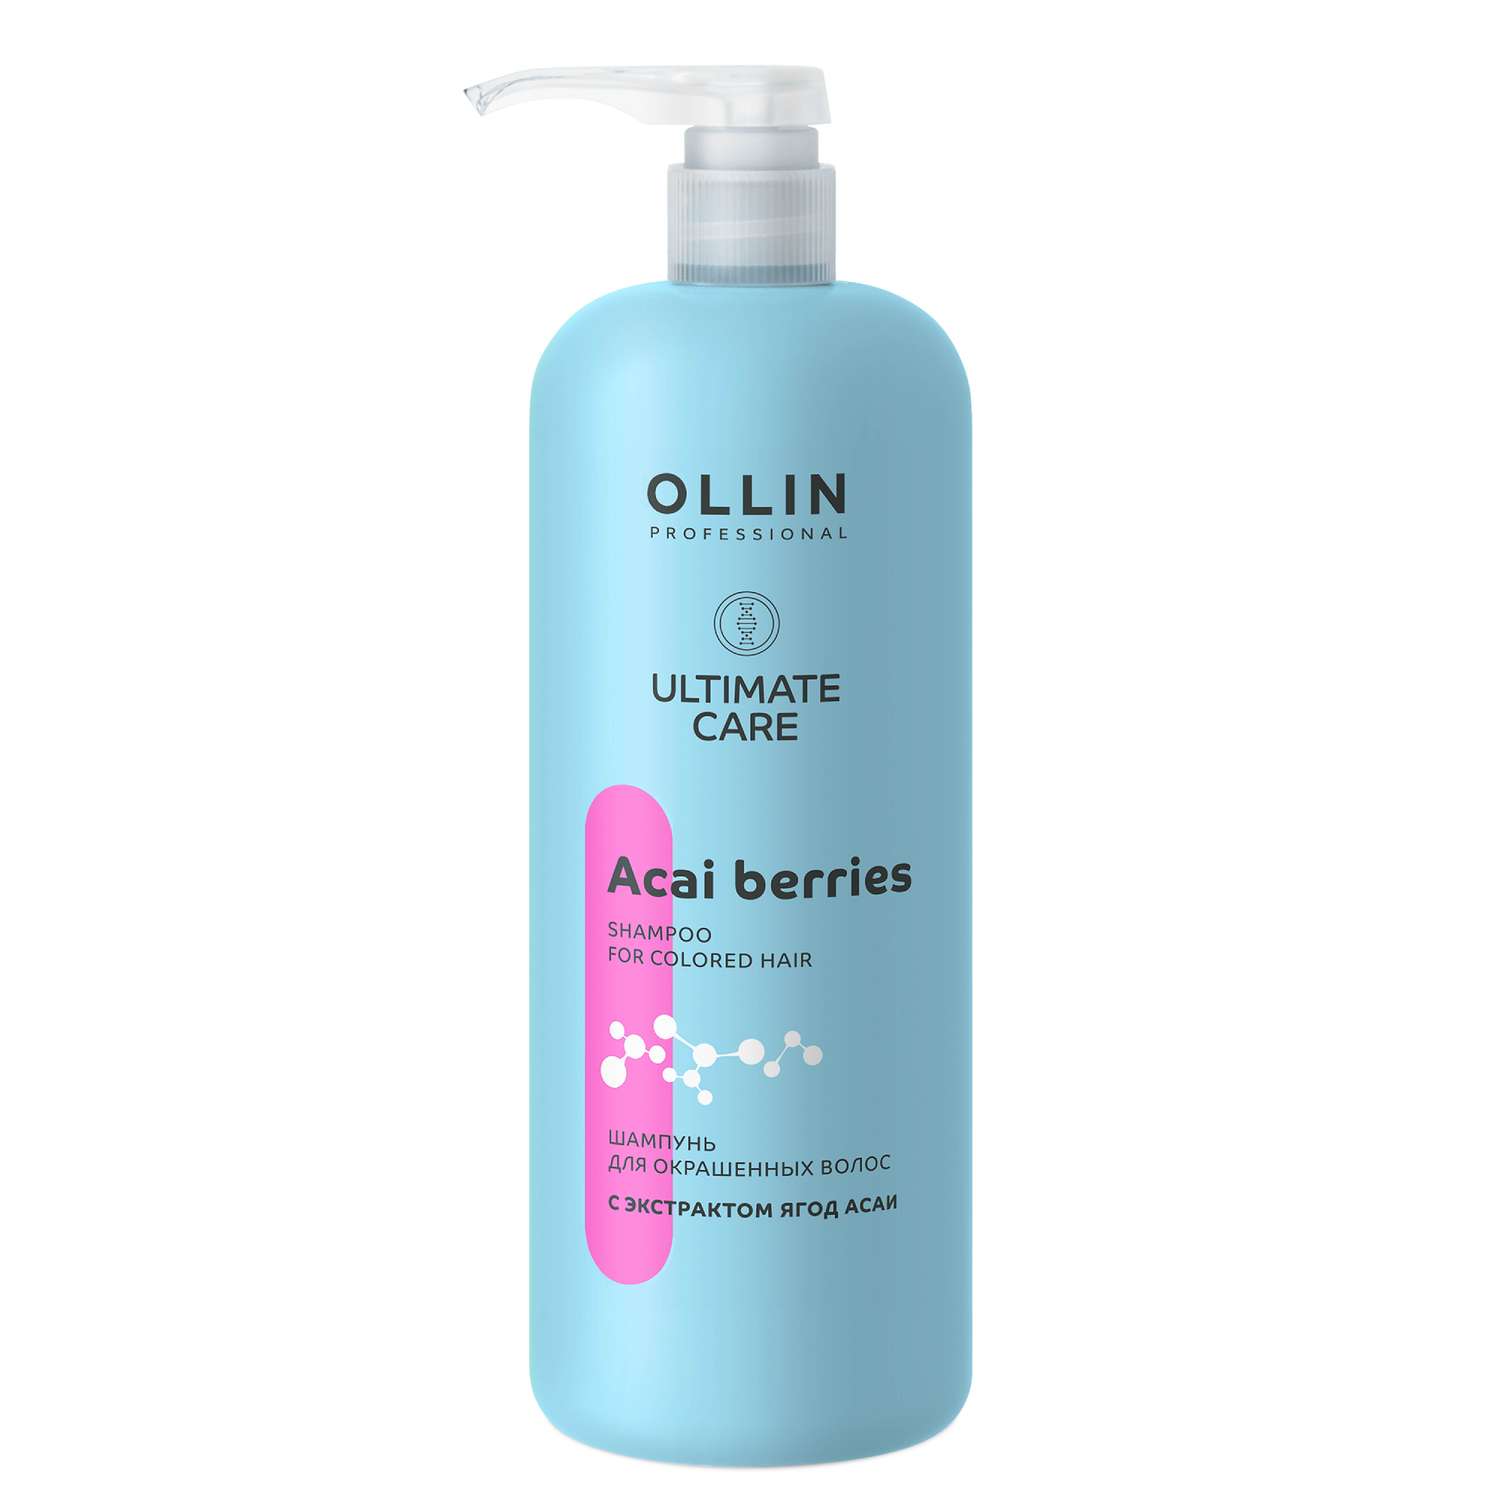 Шампунь Ollin ultimate care для окрашенных волос с экстрактом ягод асаи 1000 мл - фото 1